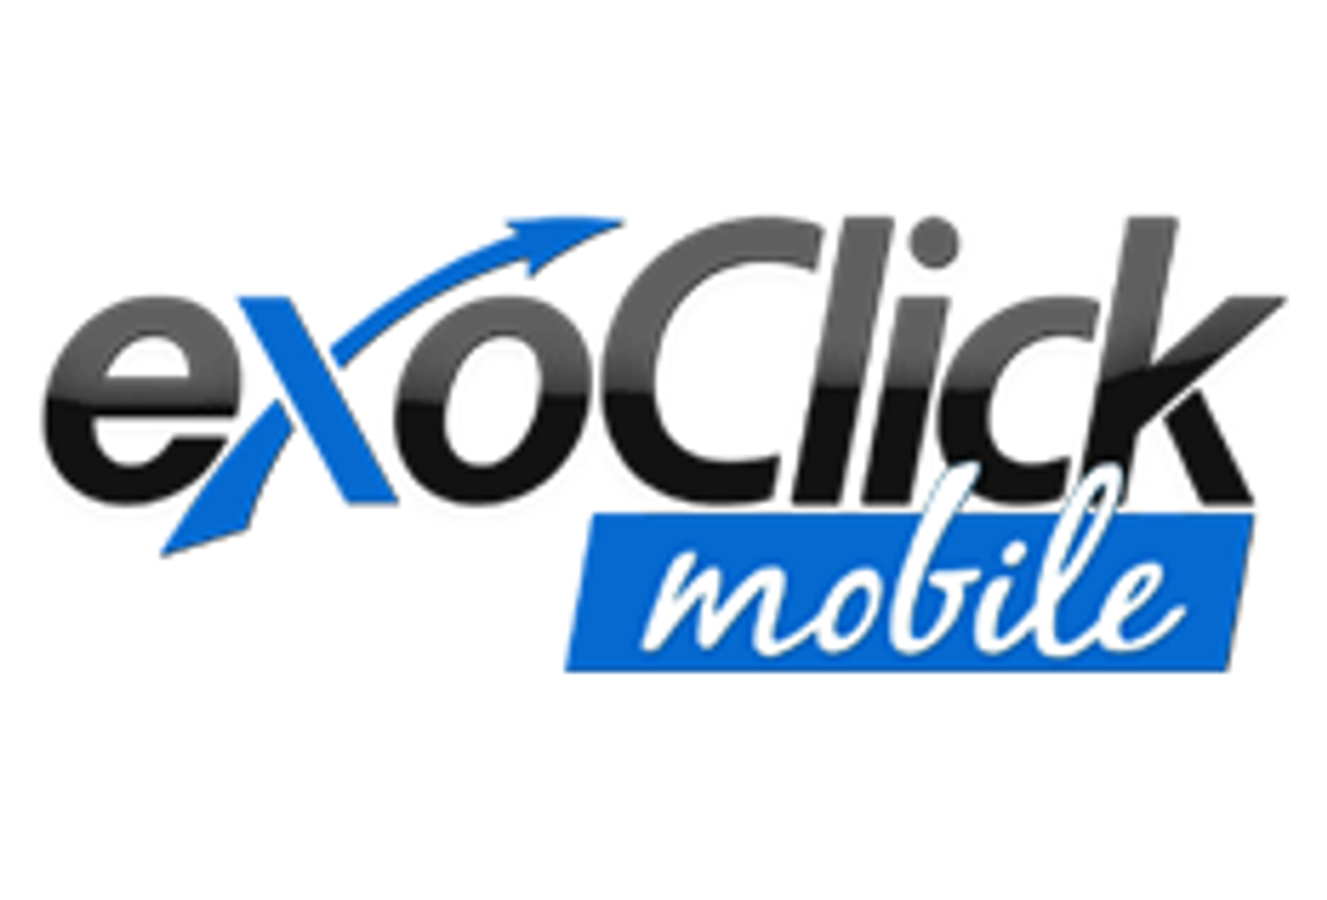 ExoclickMobile.com